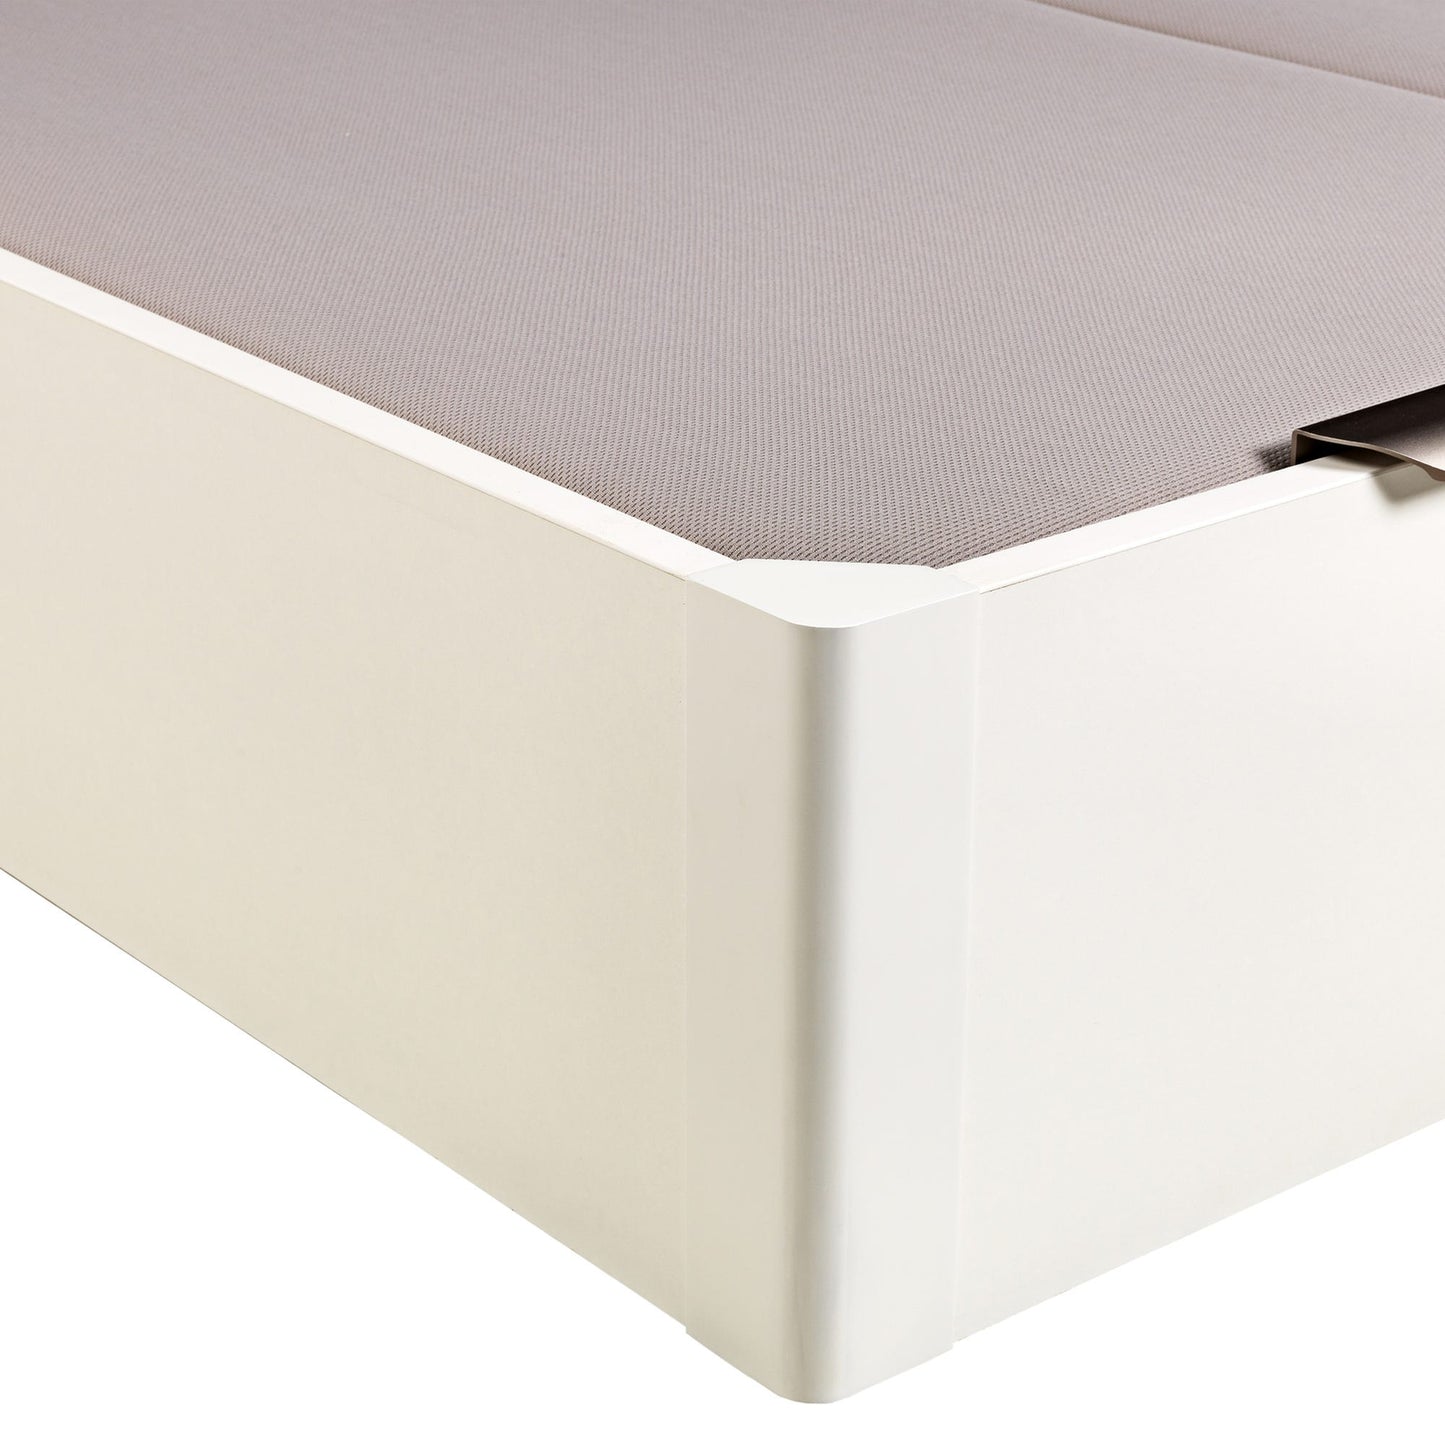 Canapé abatible de madera de tapa doble de color blanco - DESIGN - 150x210